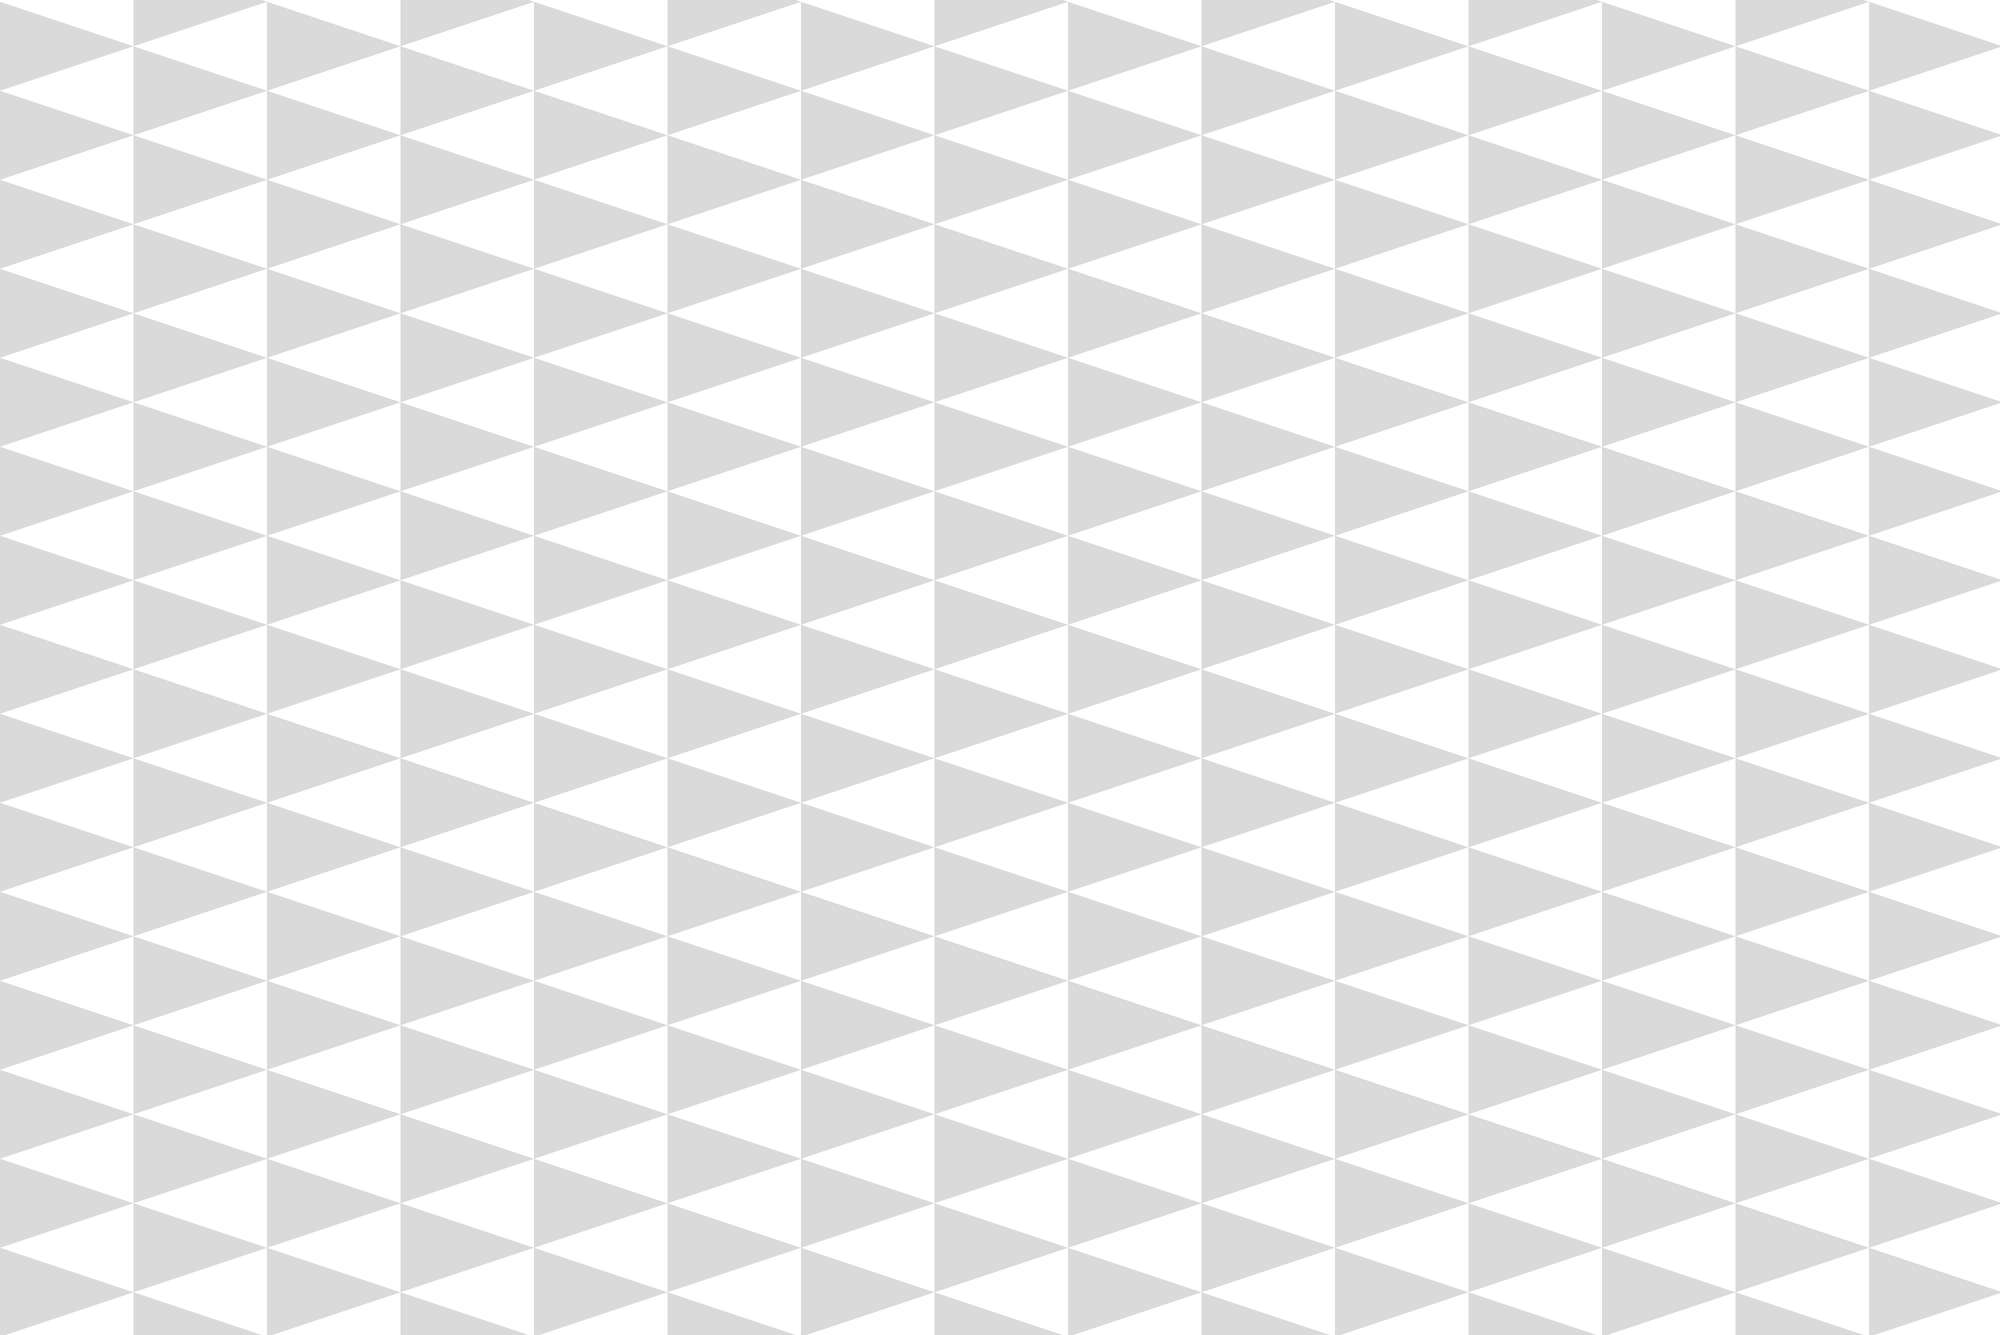             Designbehang kleine driehoekjes grijs op eersteklas gladde fleece
        